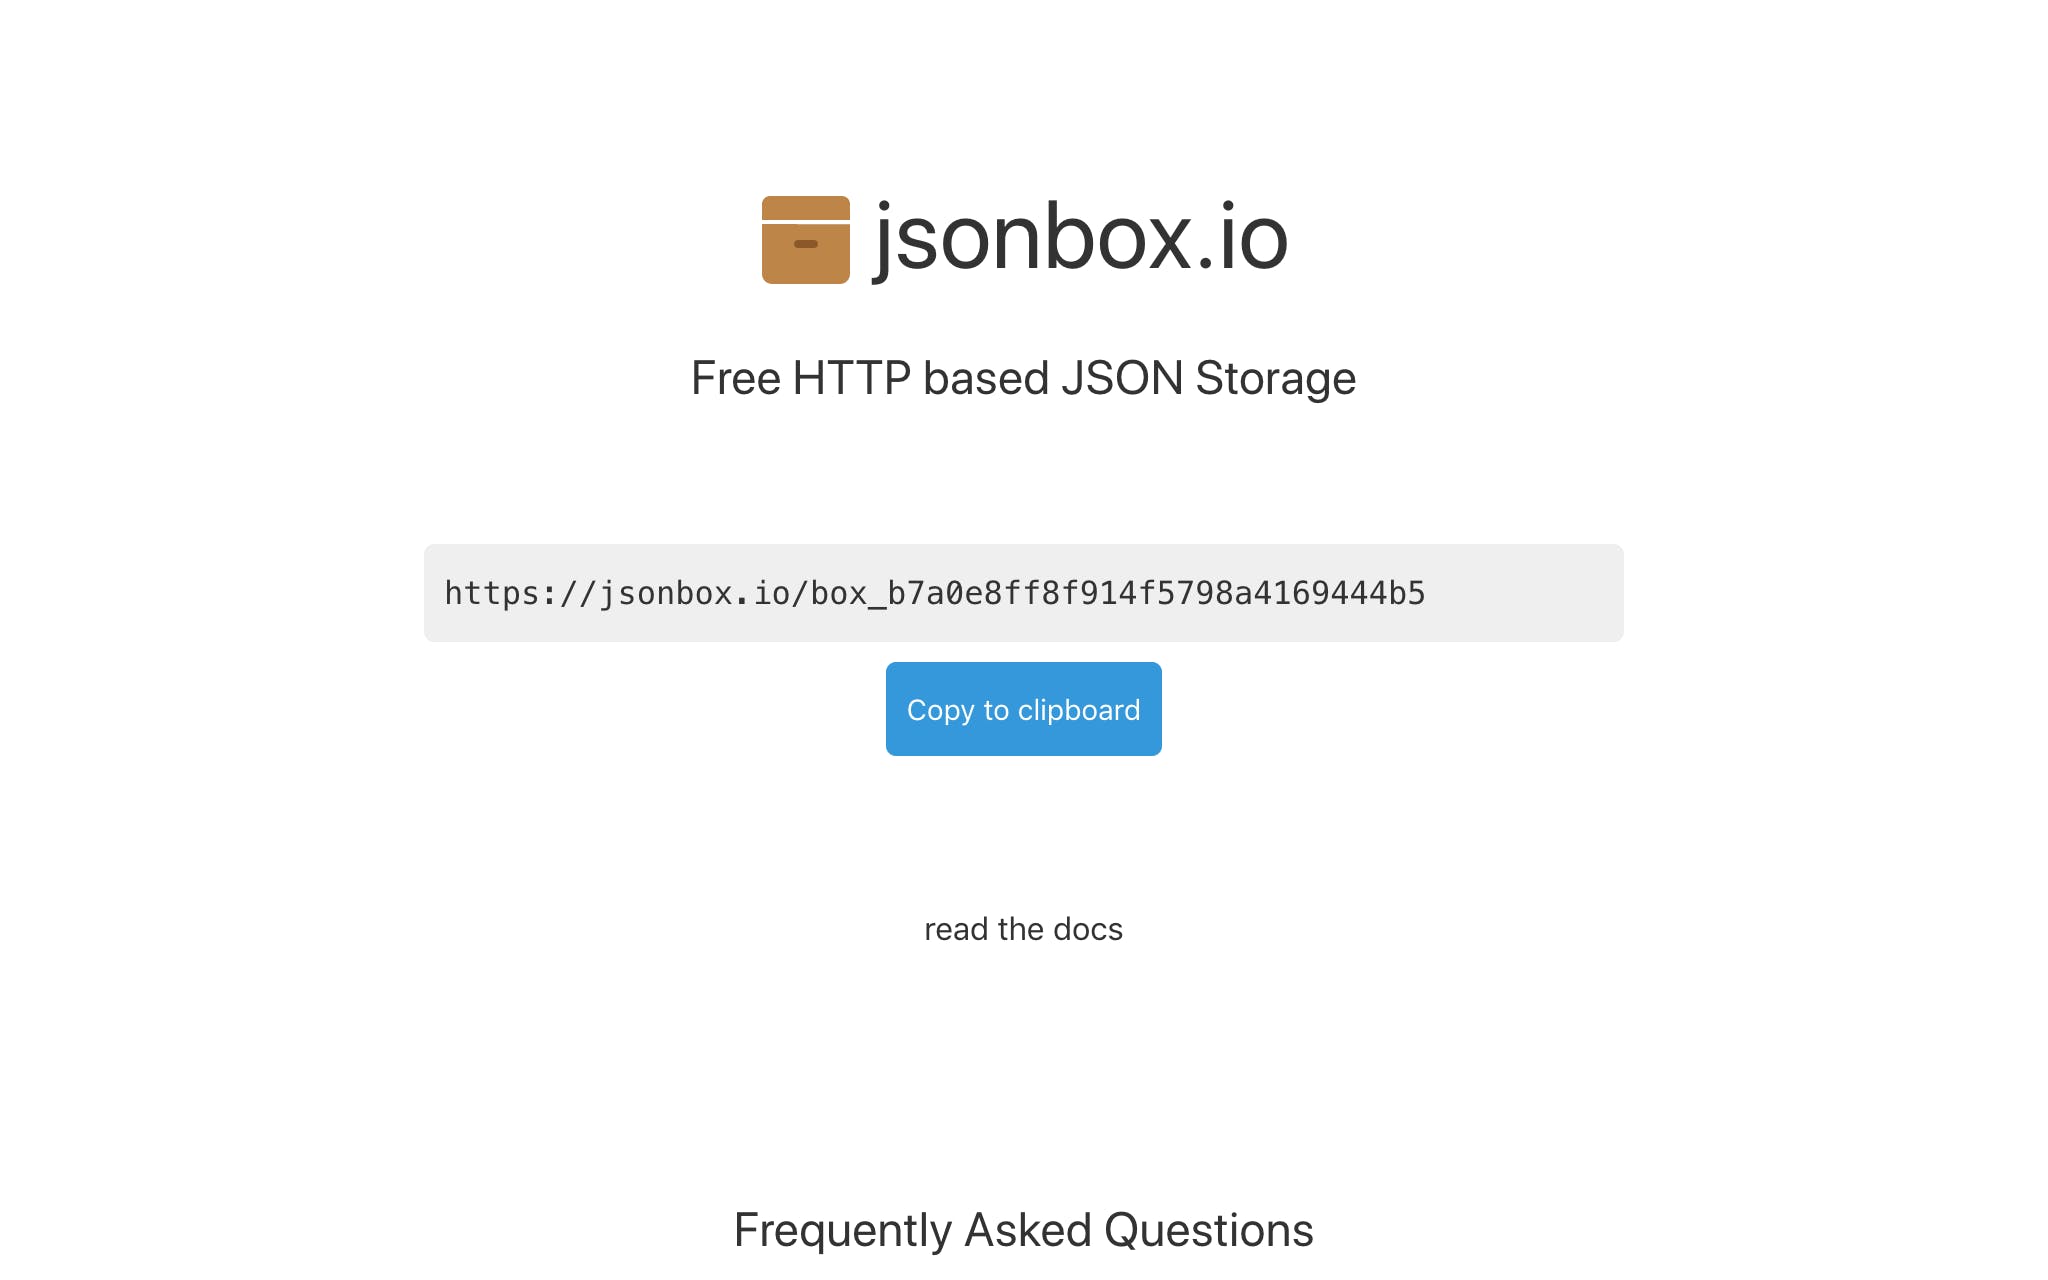 jsonbox.io media 1